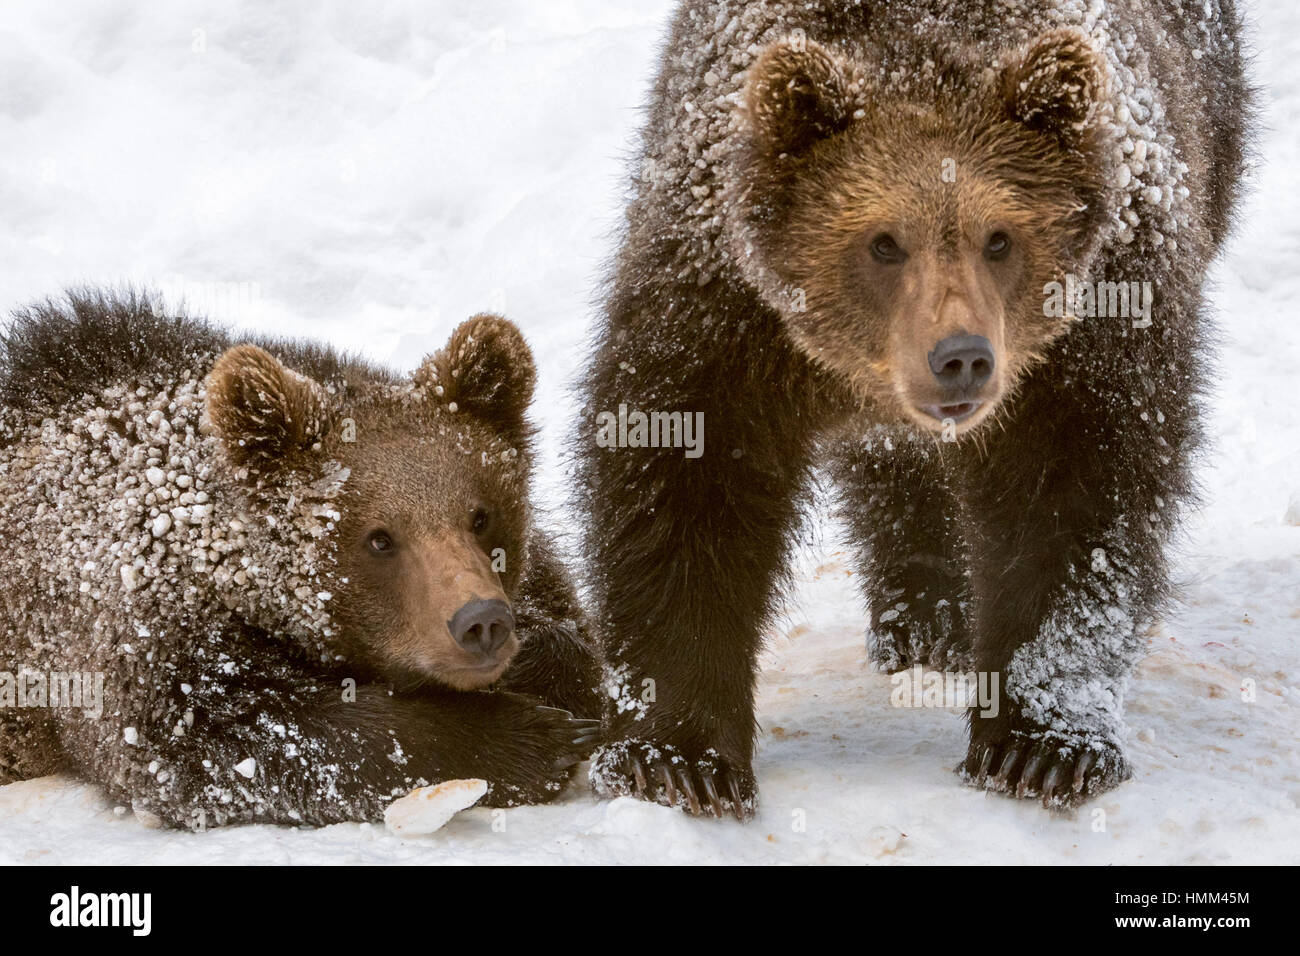 Close Up retrato de dos 1 años crías de oso pardo (Ursus arctos arctos) en la nieve en invierno Foto de stock